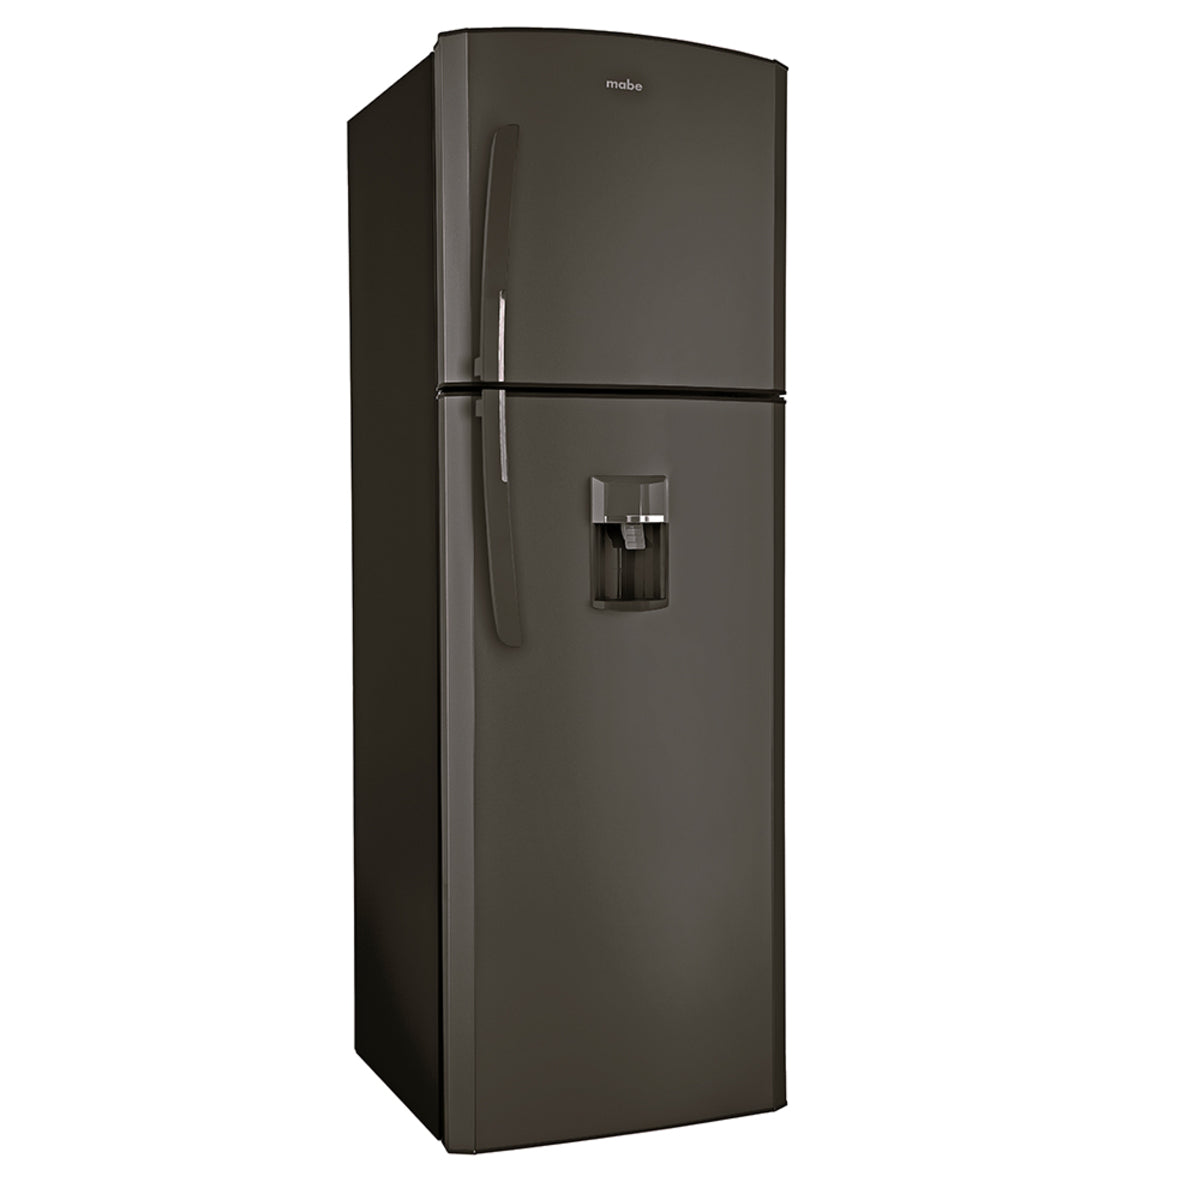 Refrigeradora Mabe RMA300FJMRD0 | 11 Pies Cúbicos | Top Mount | Dispensador | Color Negro Mate - Multimax